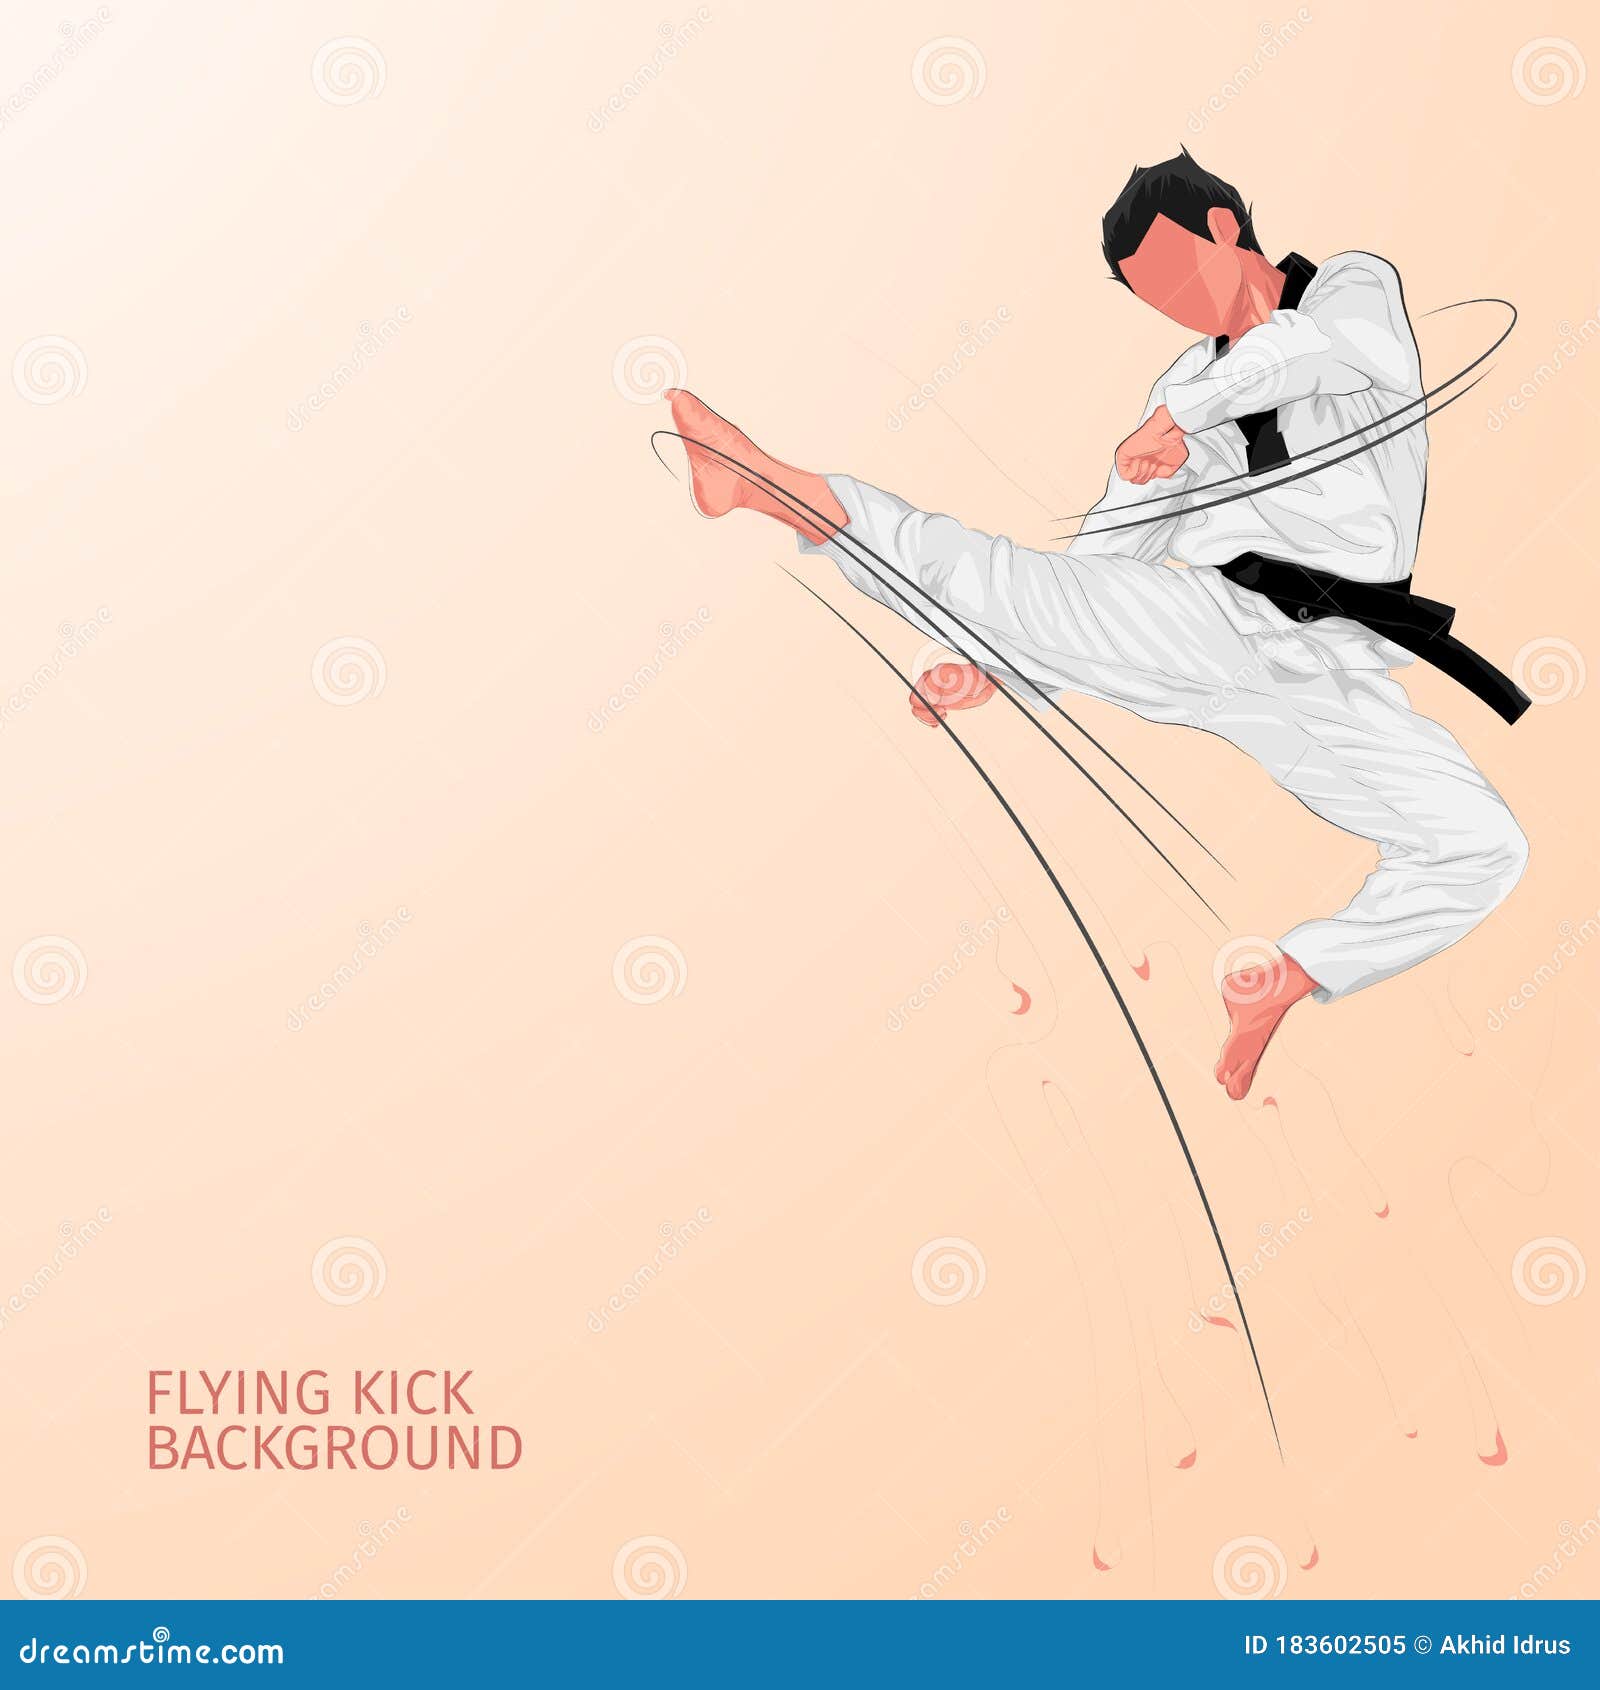 Flying kick: Một pha bay đầy uy lực của võ sĩ là điều đáng để xem. Bức ảnh về Flying kick sẽ khiến bạn thấy tinh thần quả cảm và sự kiên trung của những võ sĩ, đồng thời cảm nhận được sức mạnh và sự kiểm soát của từng động tác. 